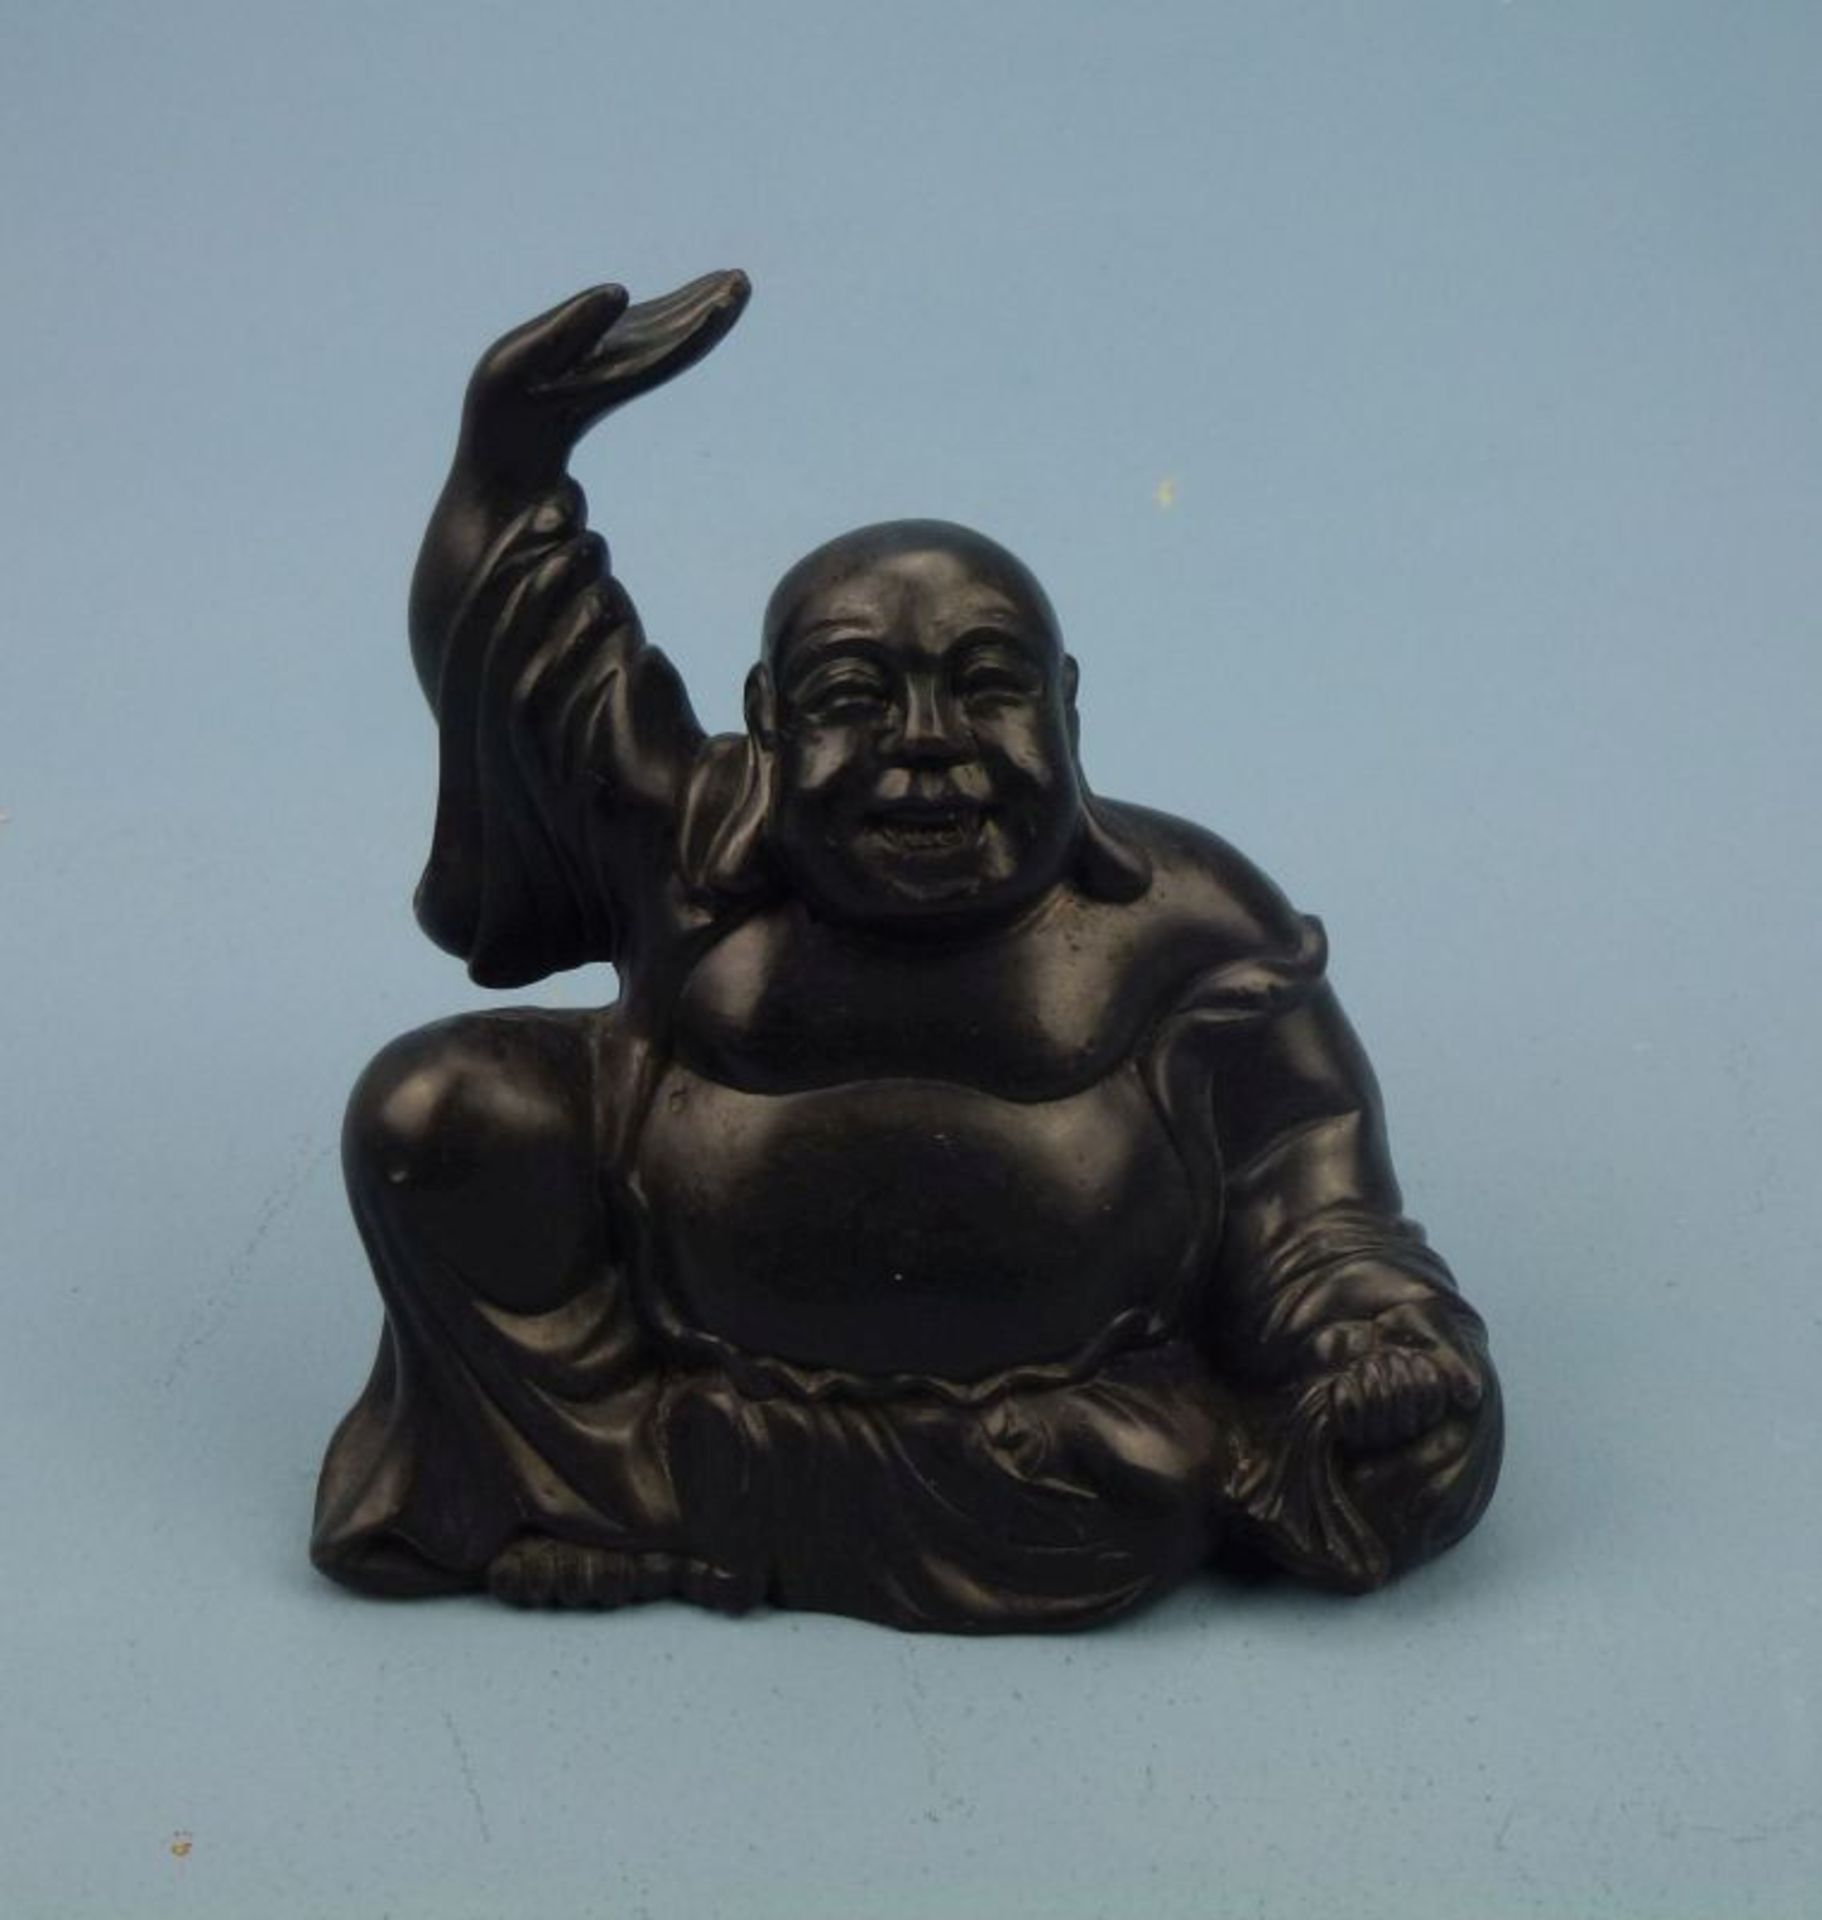 Budai BuddhaTon(?) schwarz lackiert, sitzender u. lachender dickbäuchiger Buddha m. über Kopf